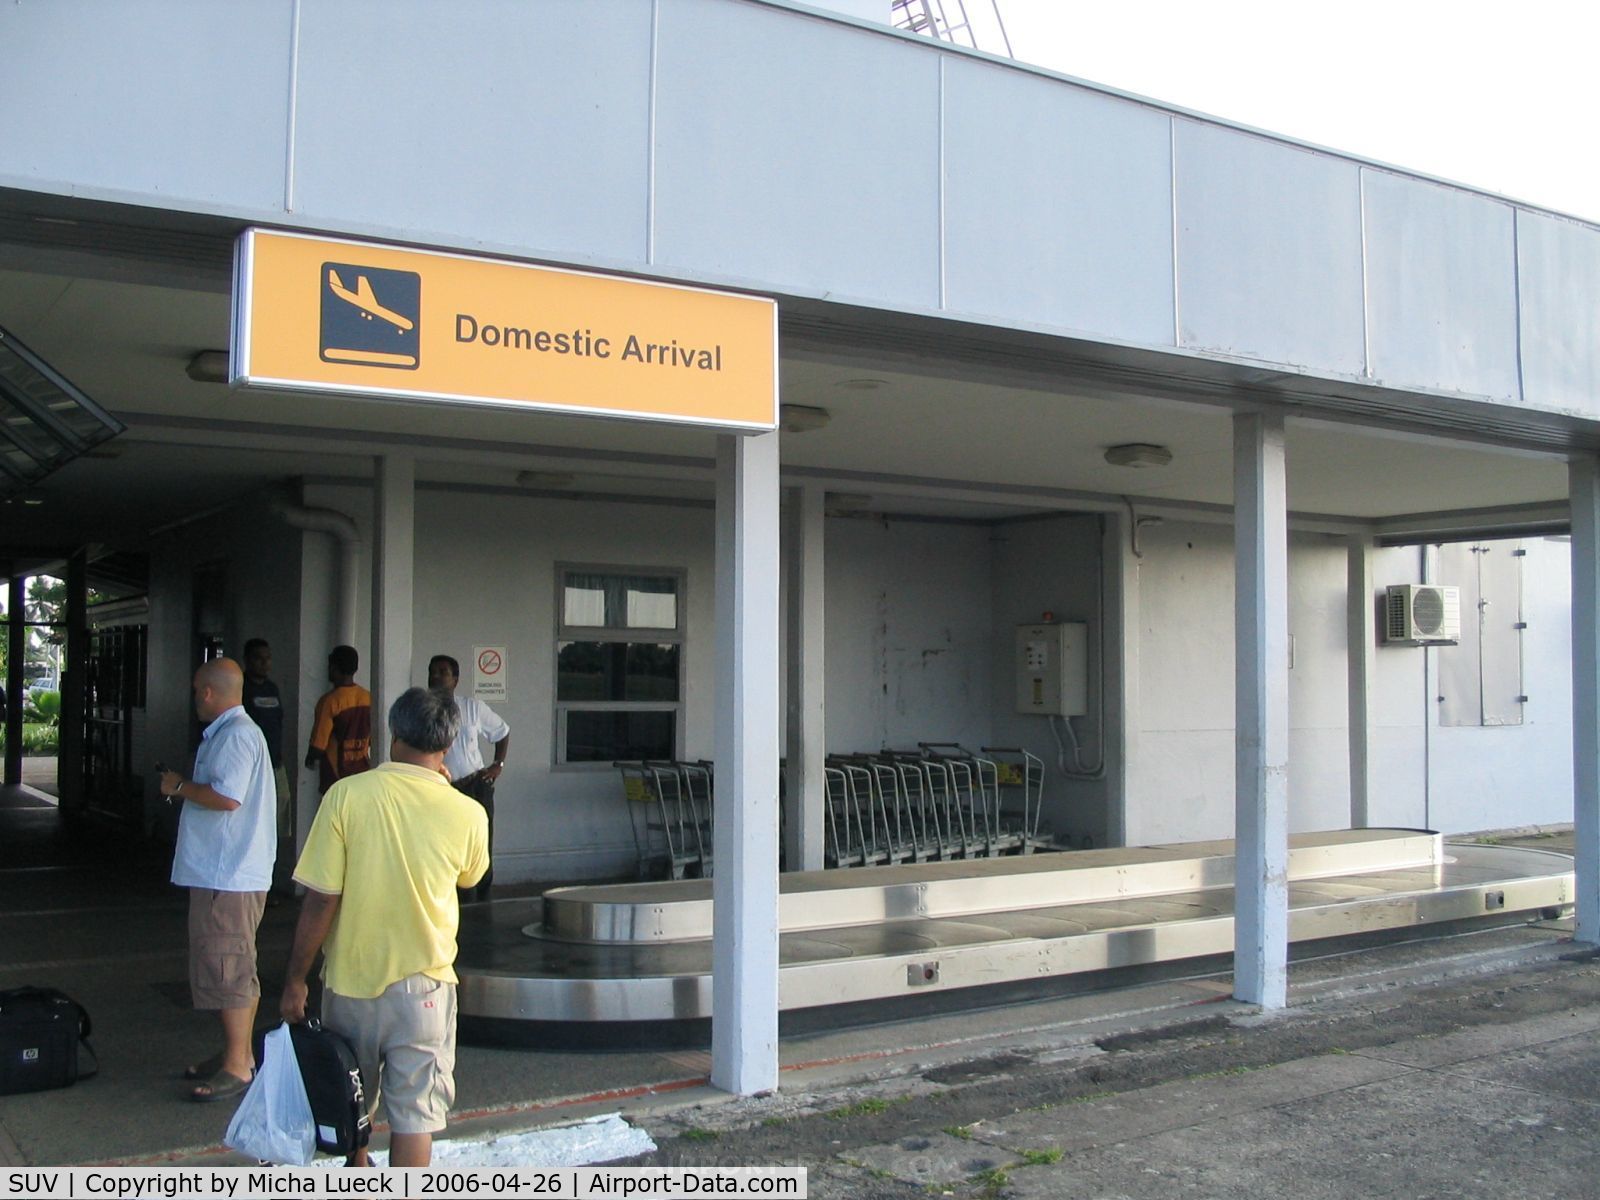 Nausori International Airport, Suva, Viti Levu Fiji (SUV) - Arrivals and baggage caroussel at Suva